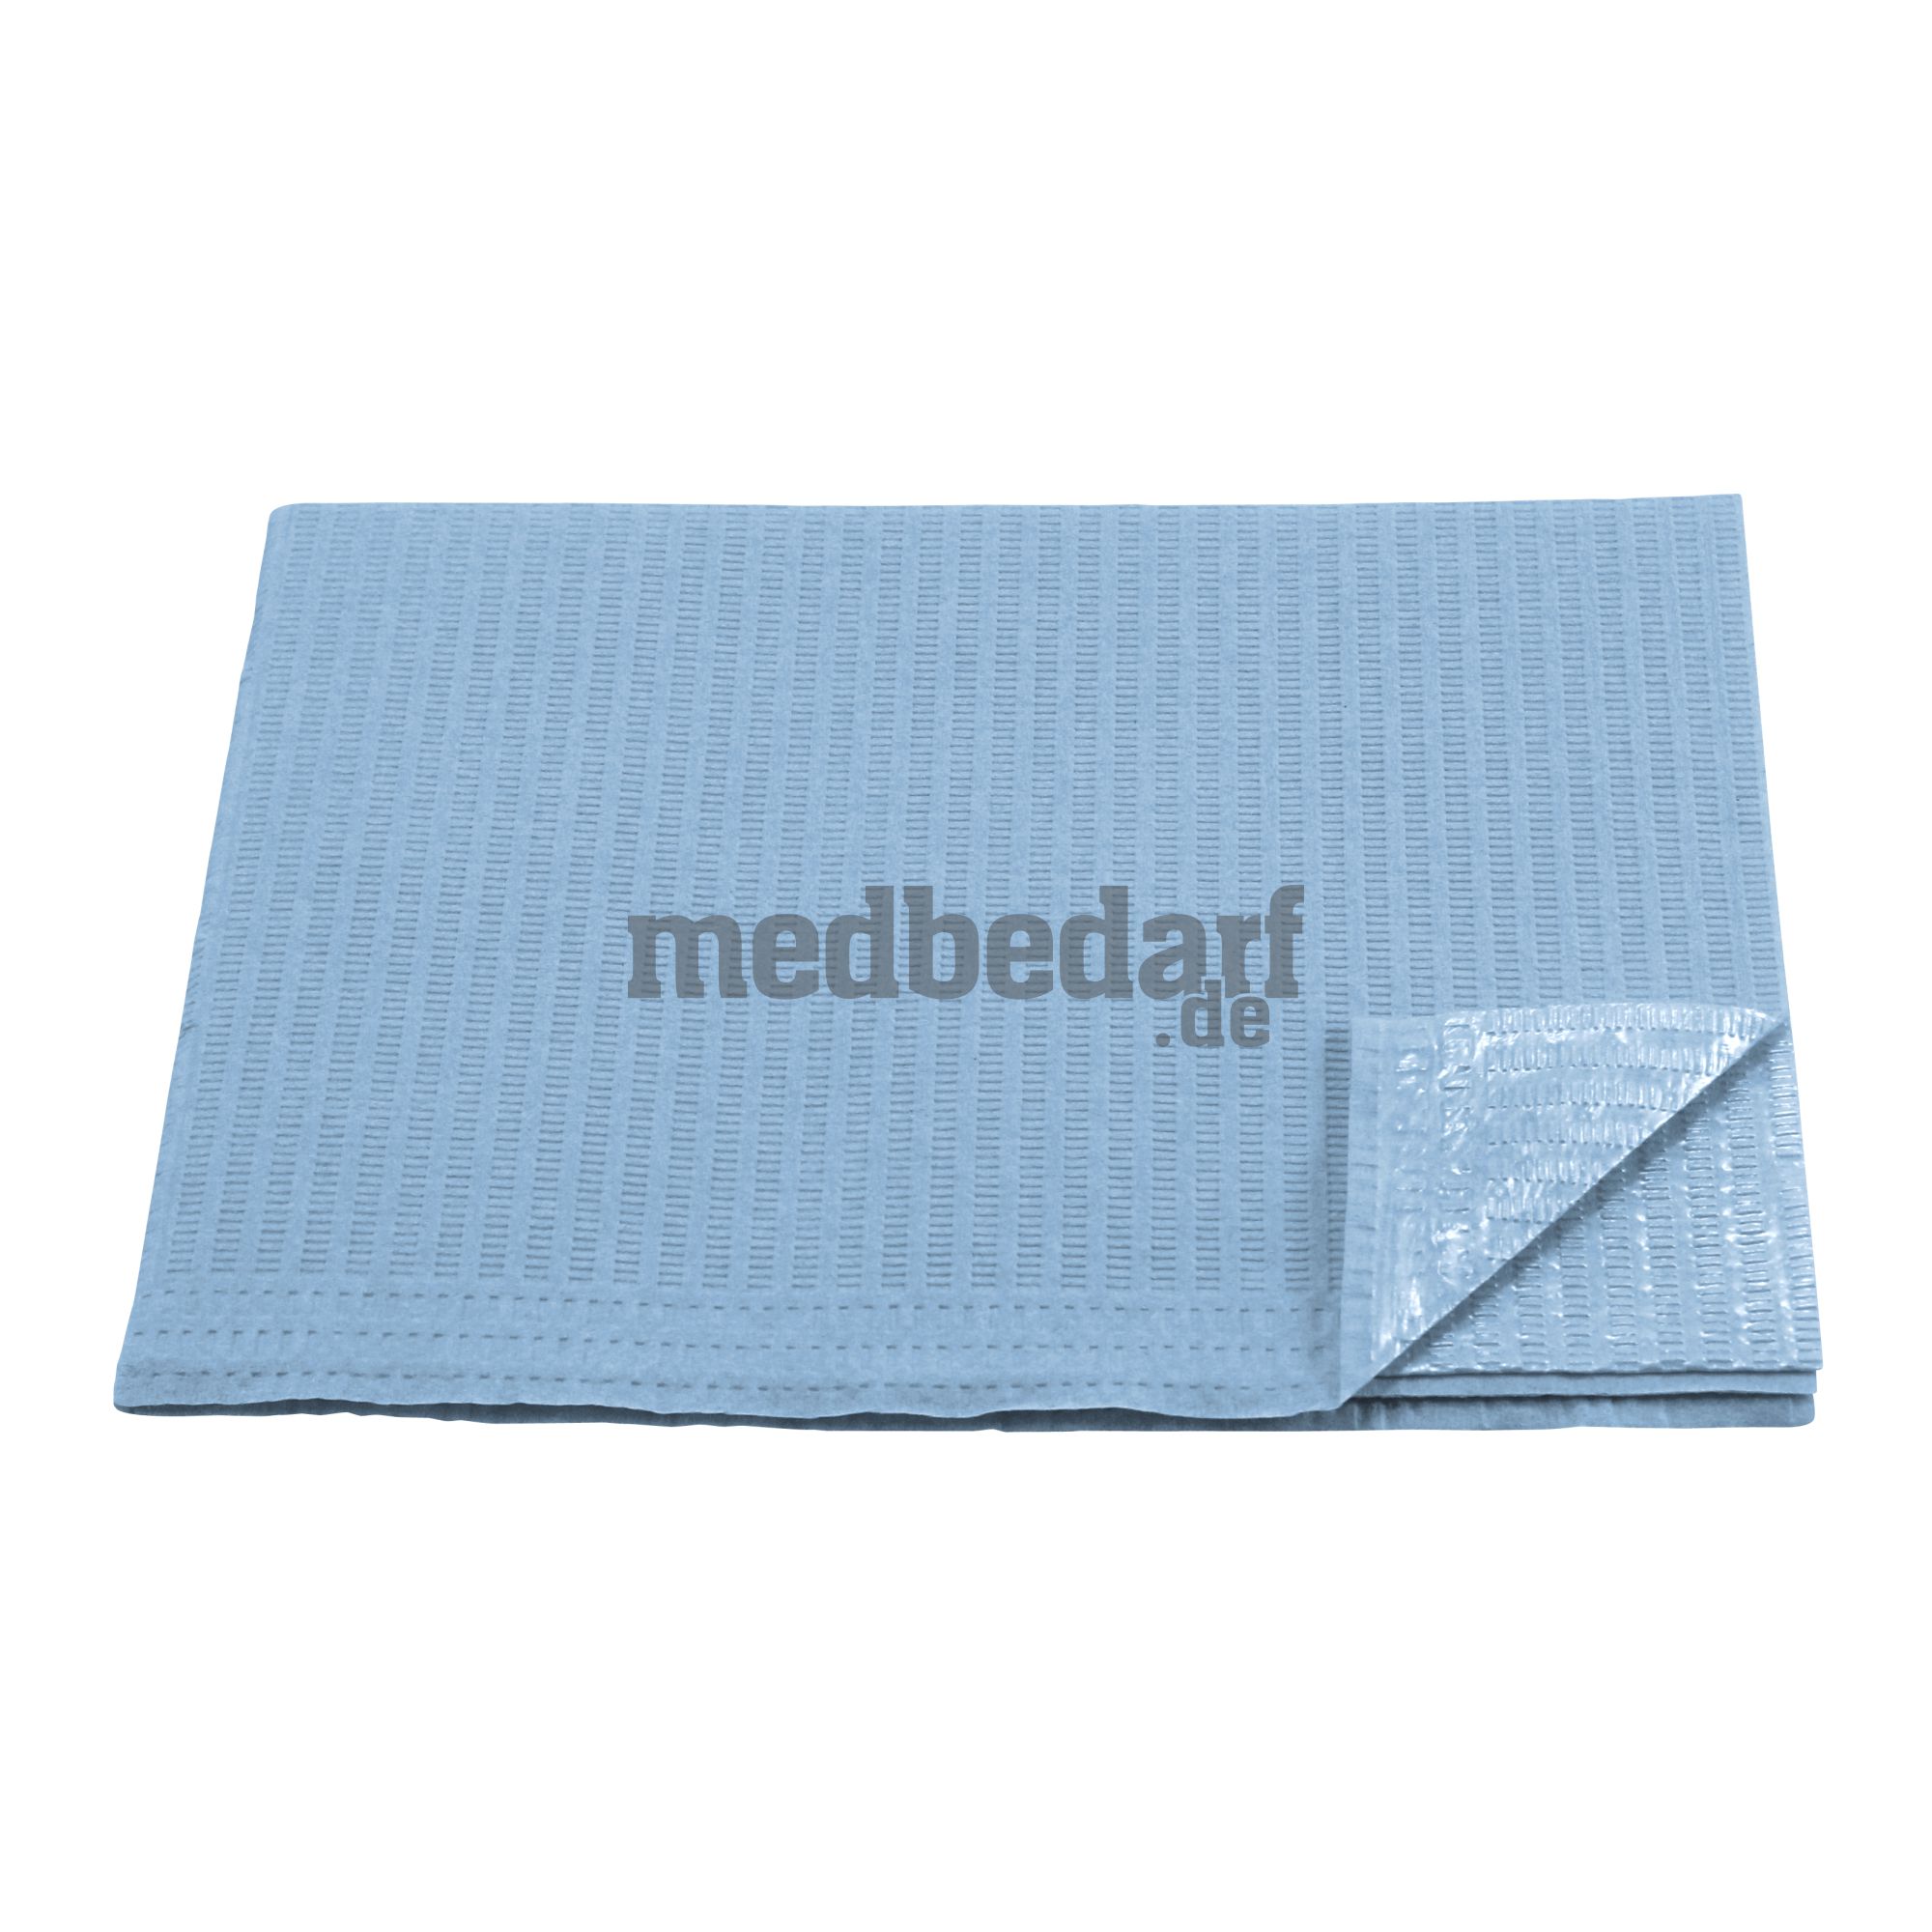 Patientenservietten, Tissue/PE, hellblau, 500 Stück